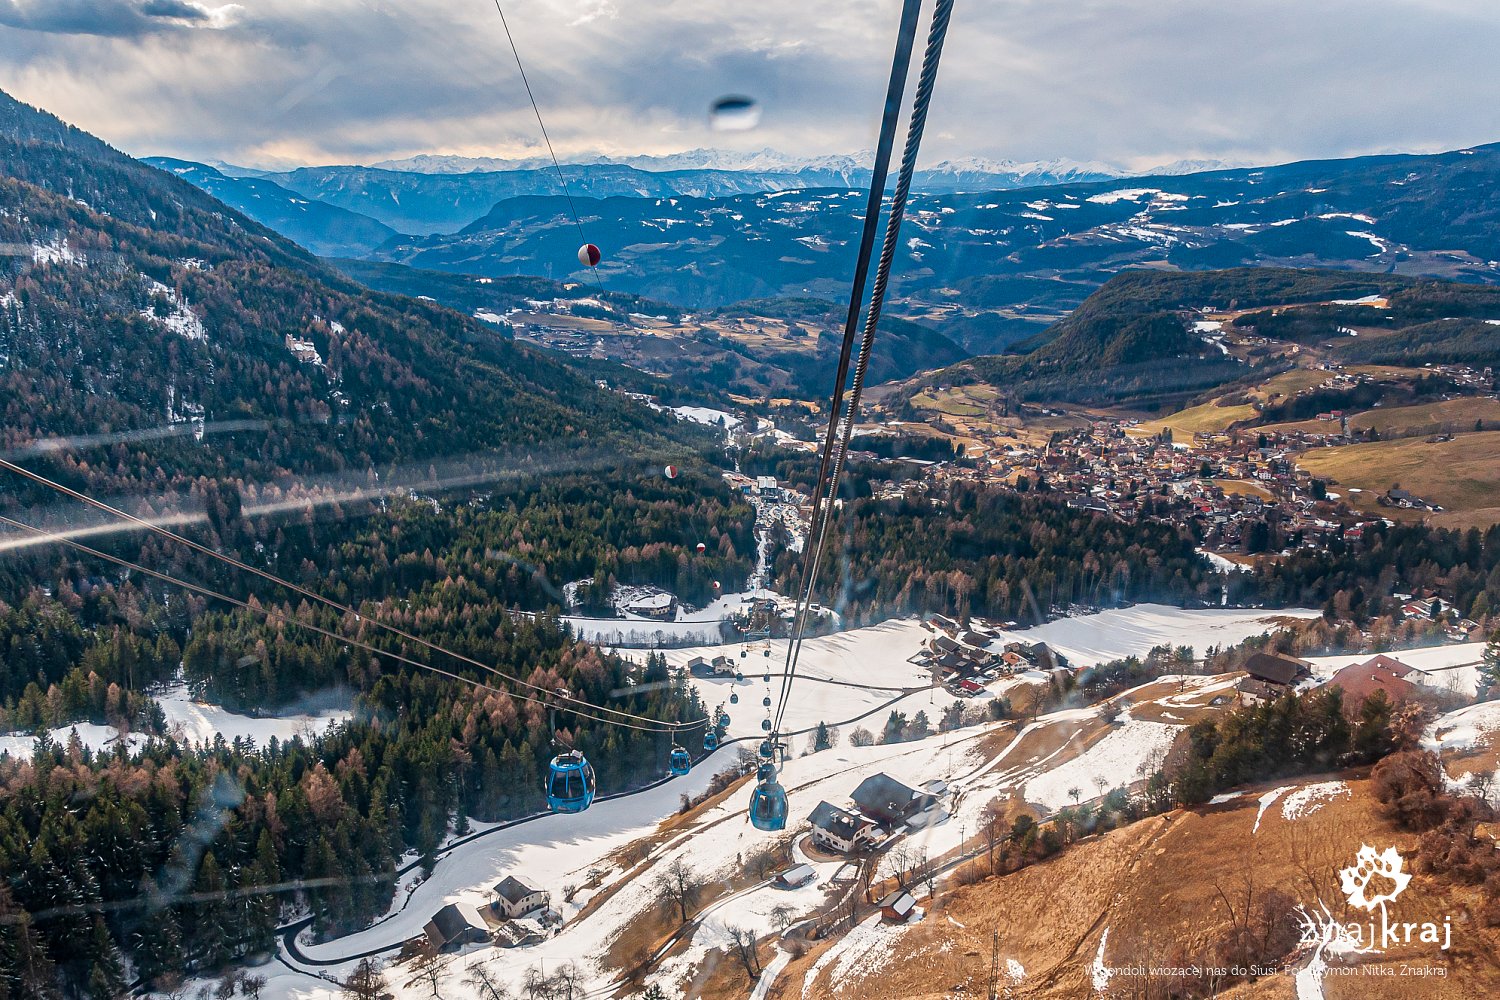 Dolomiti Nordicski состоит из лыжных трасс 12 лыжных курортов в Южном Тироле, Восточном Тироле и итальянских провинциях Беллуно и Фриули-Венеция-Джулия